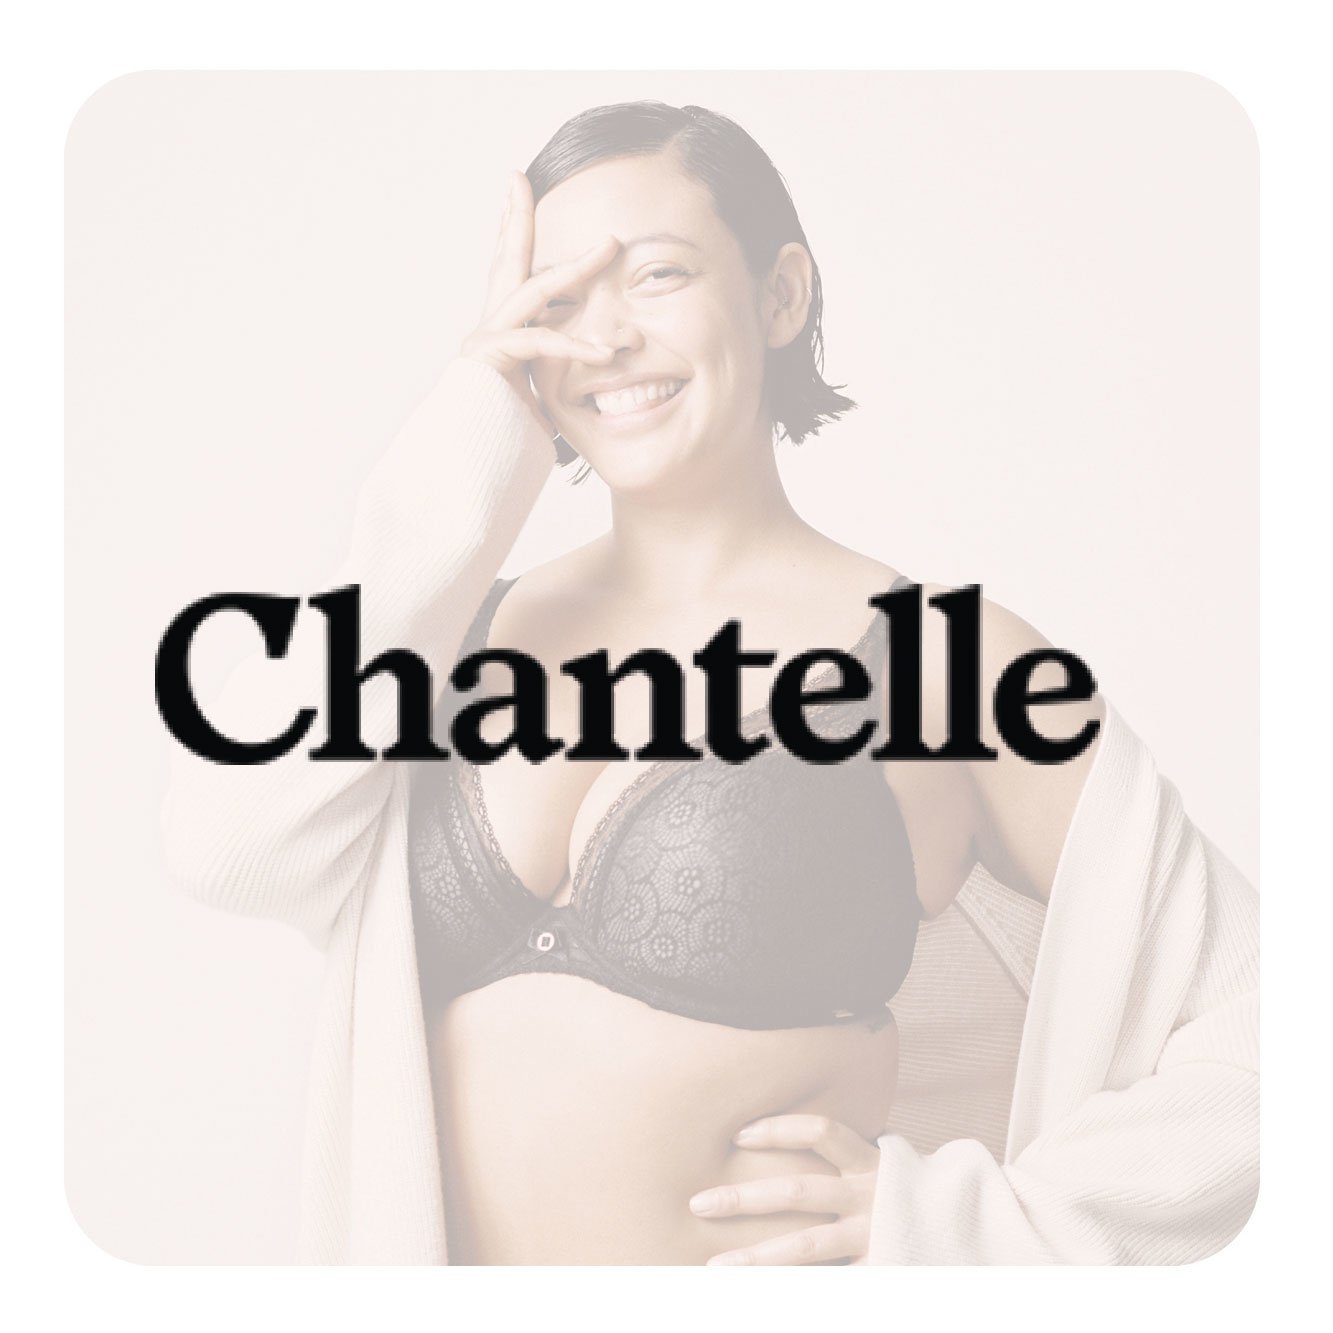 Chantelle, Intimates & Sleepwear